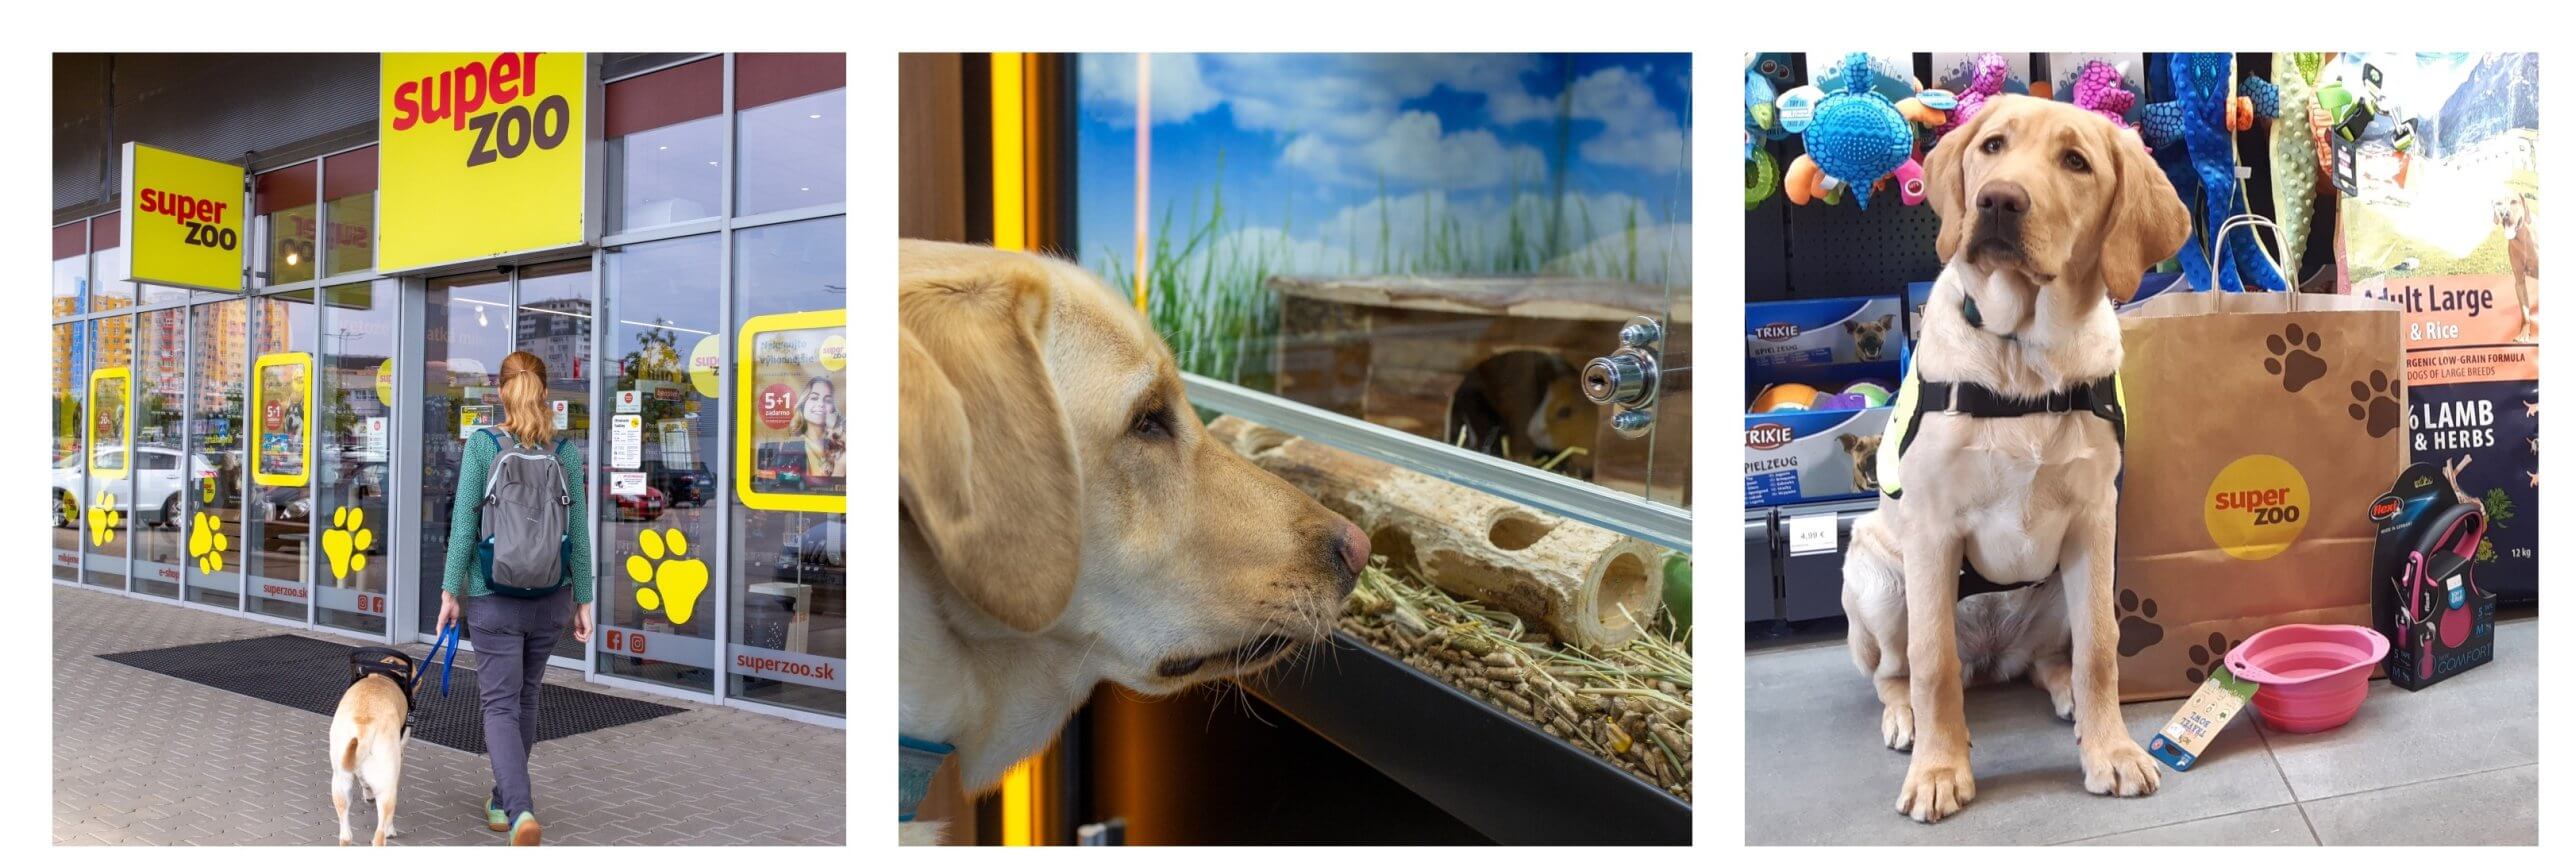 Koláž troch fotografií. Na prvej vchádza vodiaci pes do Super Zoo spolu so svojou trénerkou. Na druhej si tento pes obzerá hlodavce v akváriu a na tretej sedí žlté šteňa vedľa tašky Super Zoo a pozerá do objektívu.